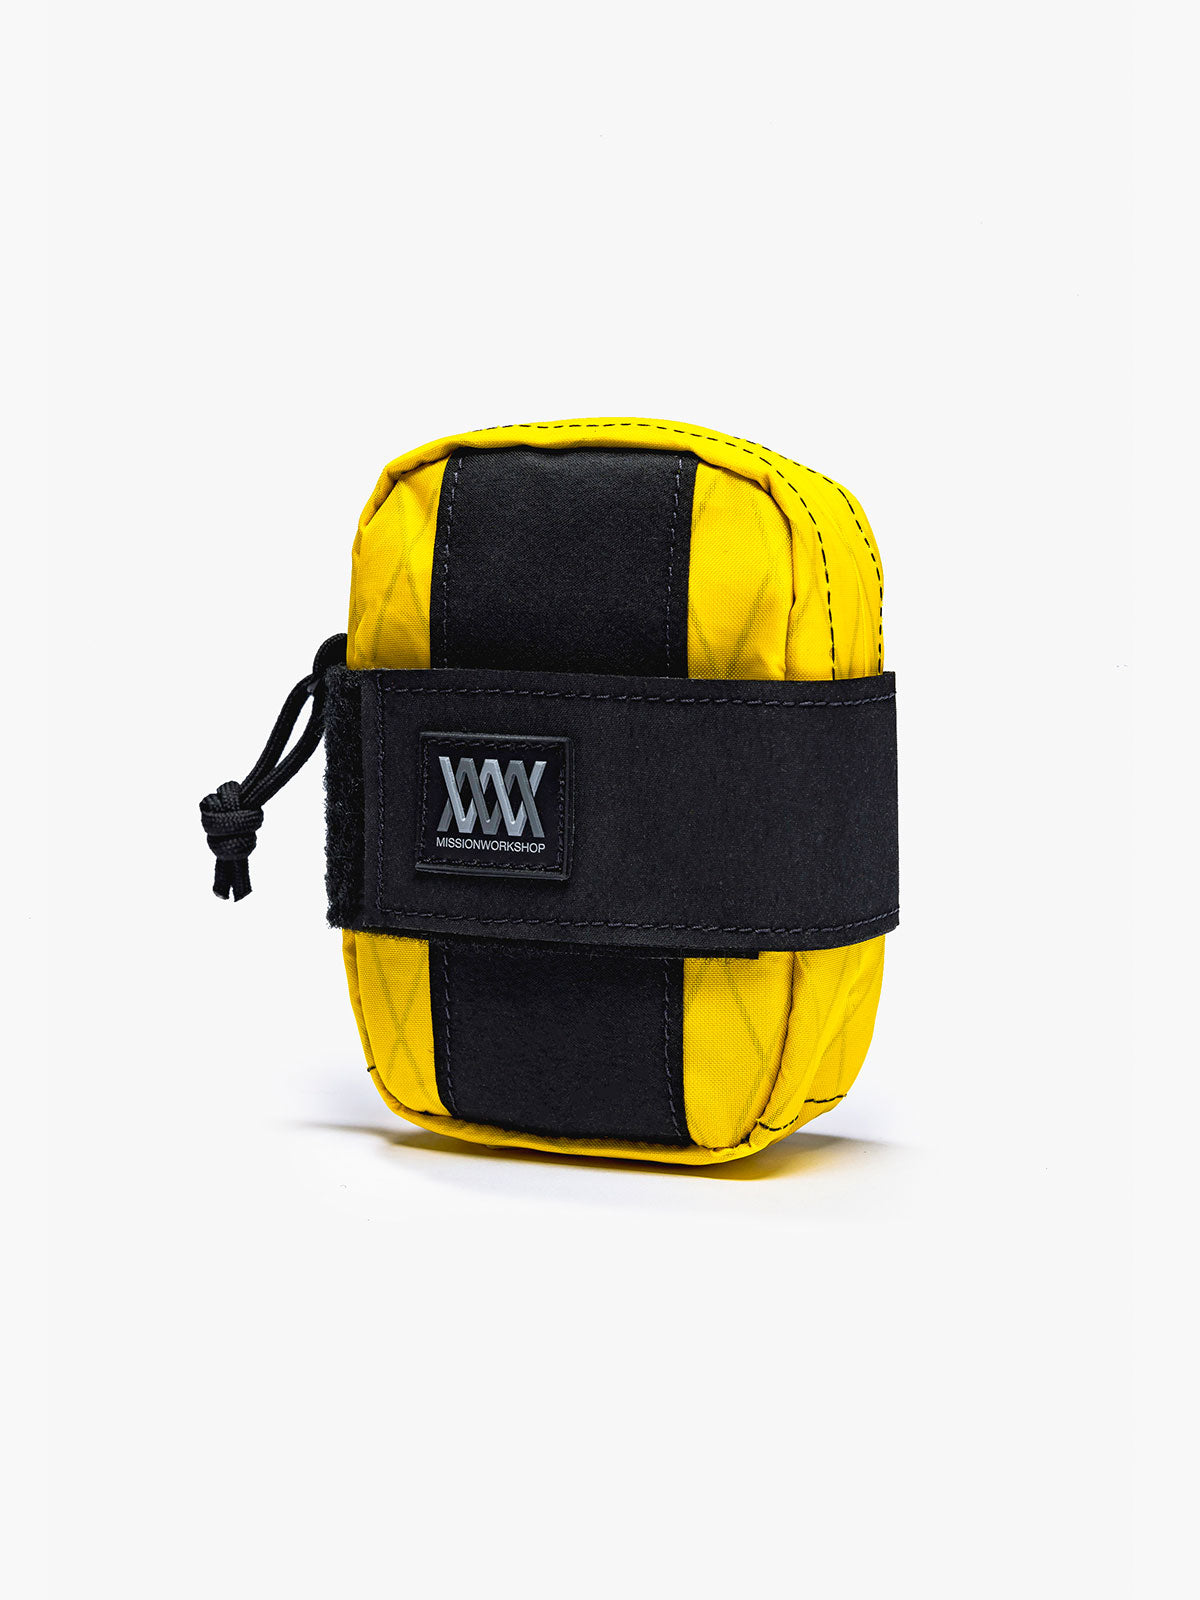 Mission Saddle Bag von Mission Workshop - Wetterfeste Taschen und technische Bekleidung - San Francisco & Los Angeles - Für die Ewigkeit gebaut - Garantiert